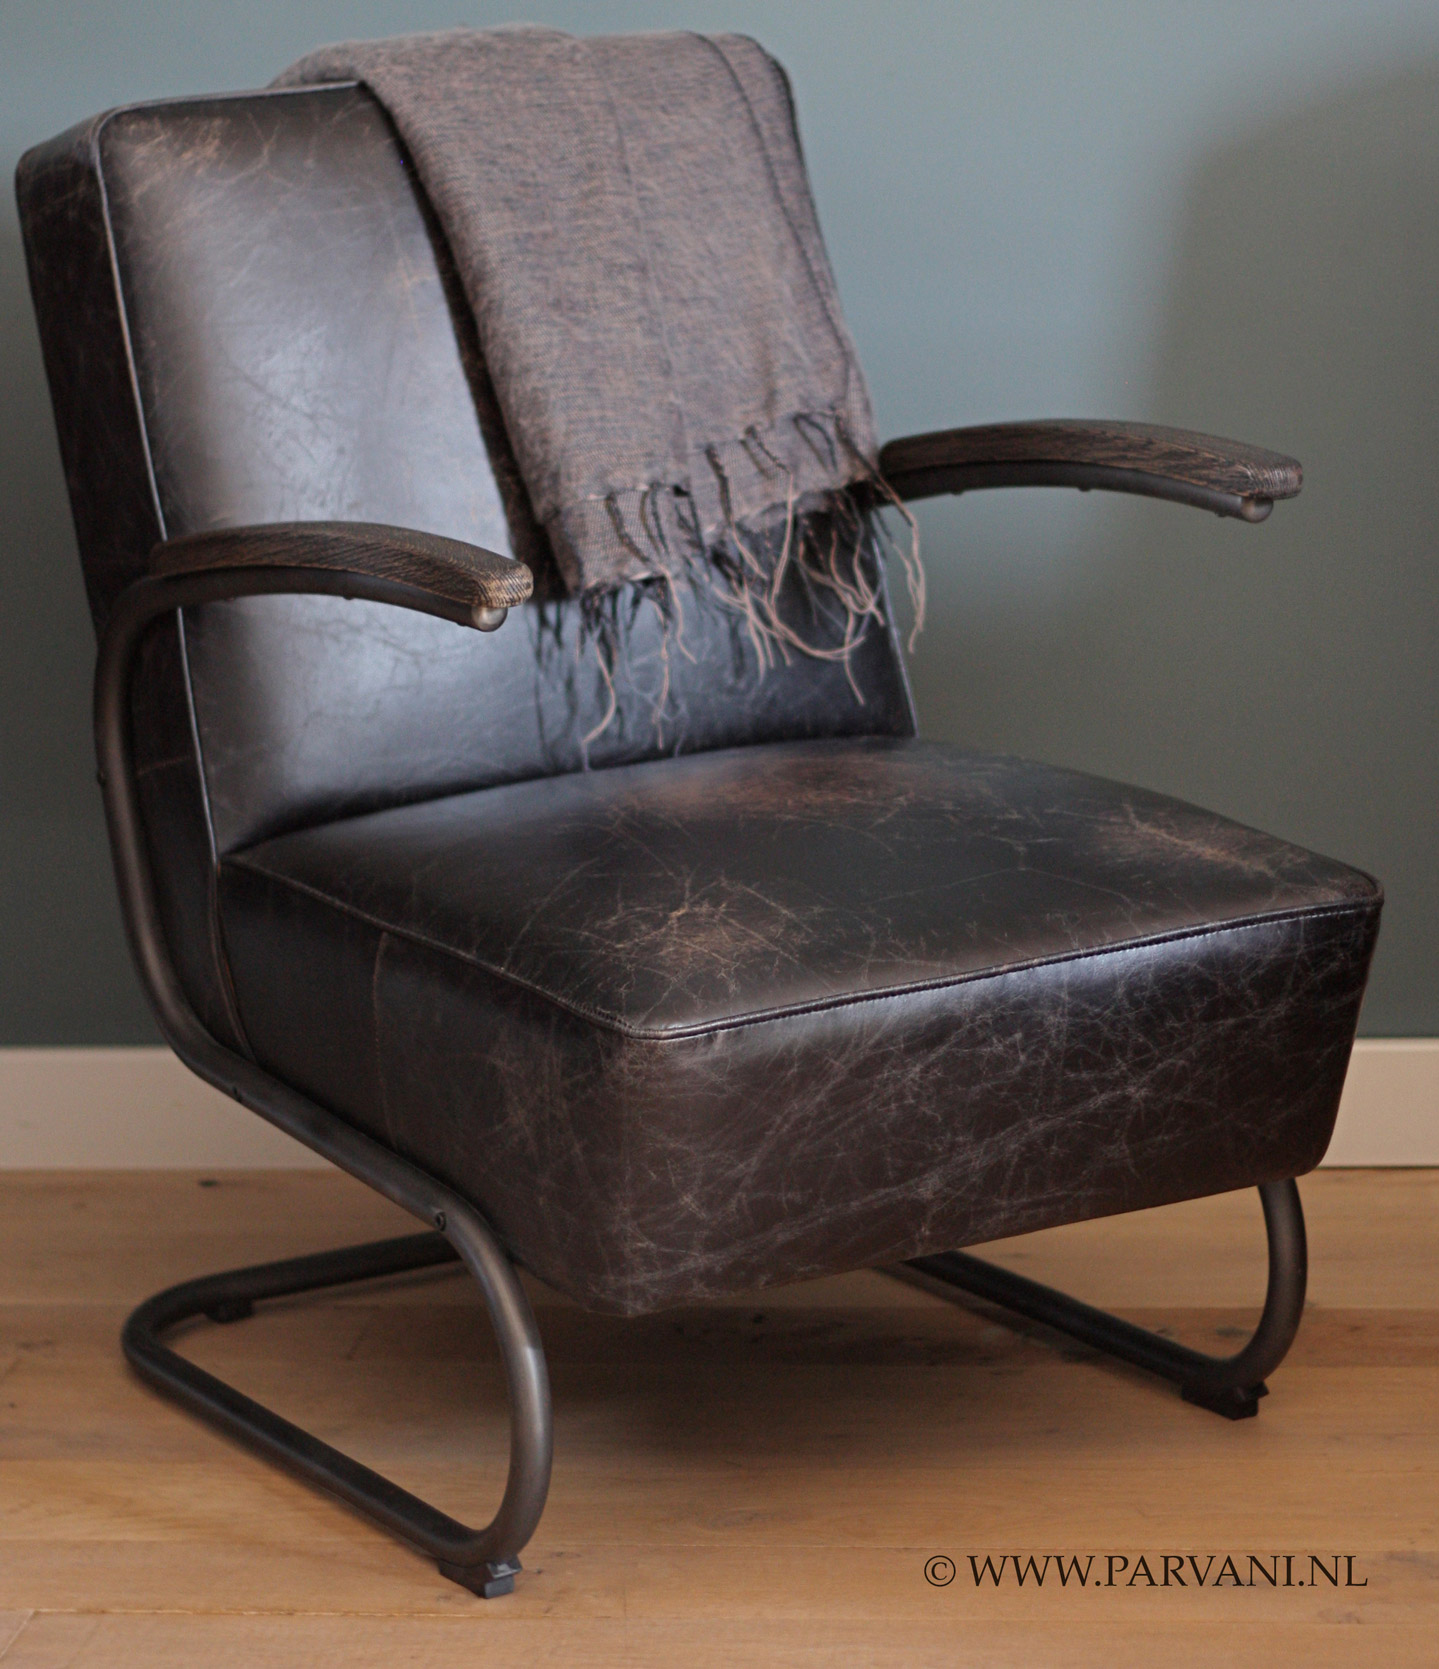 isolatie Crimineel Ligatie Vintage-leren-fauteuil-stoel-robuust | Parvani